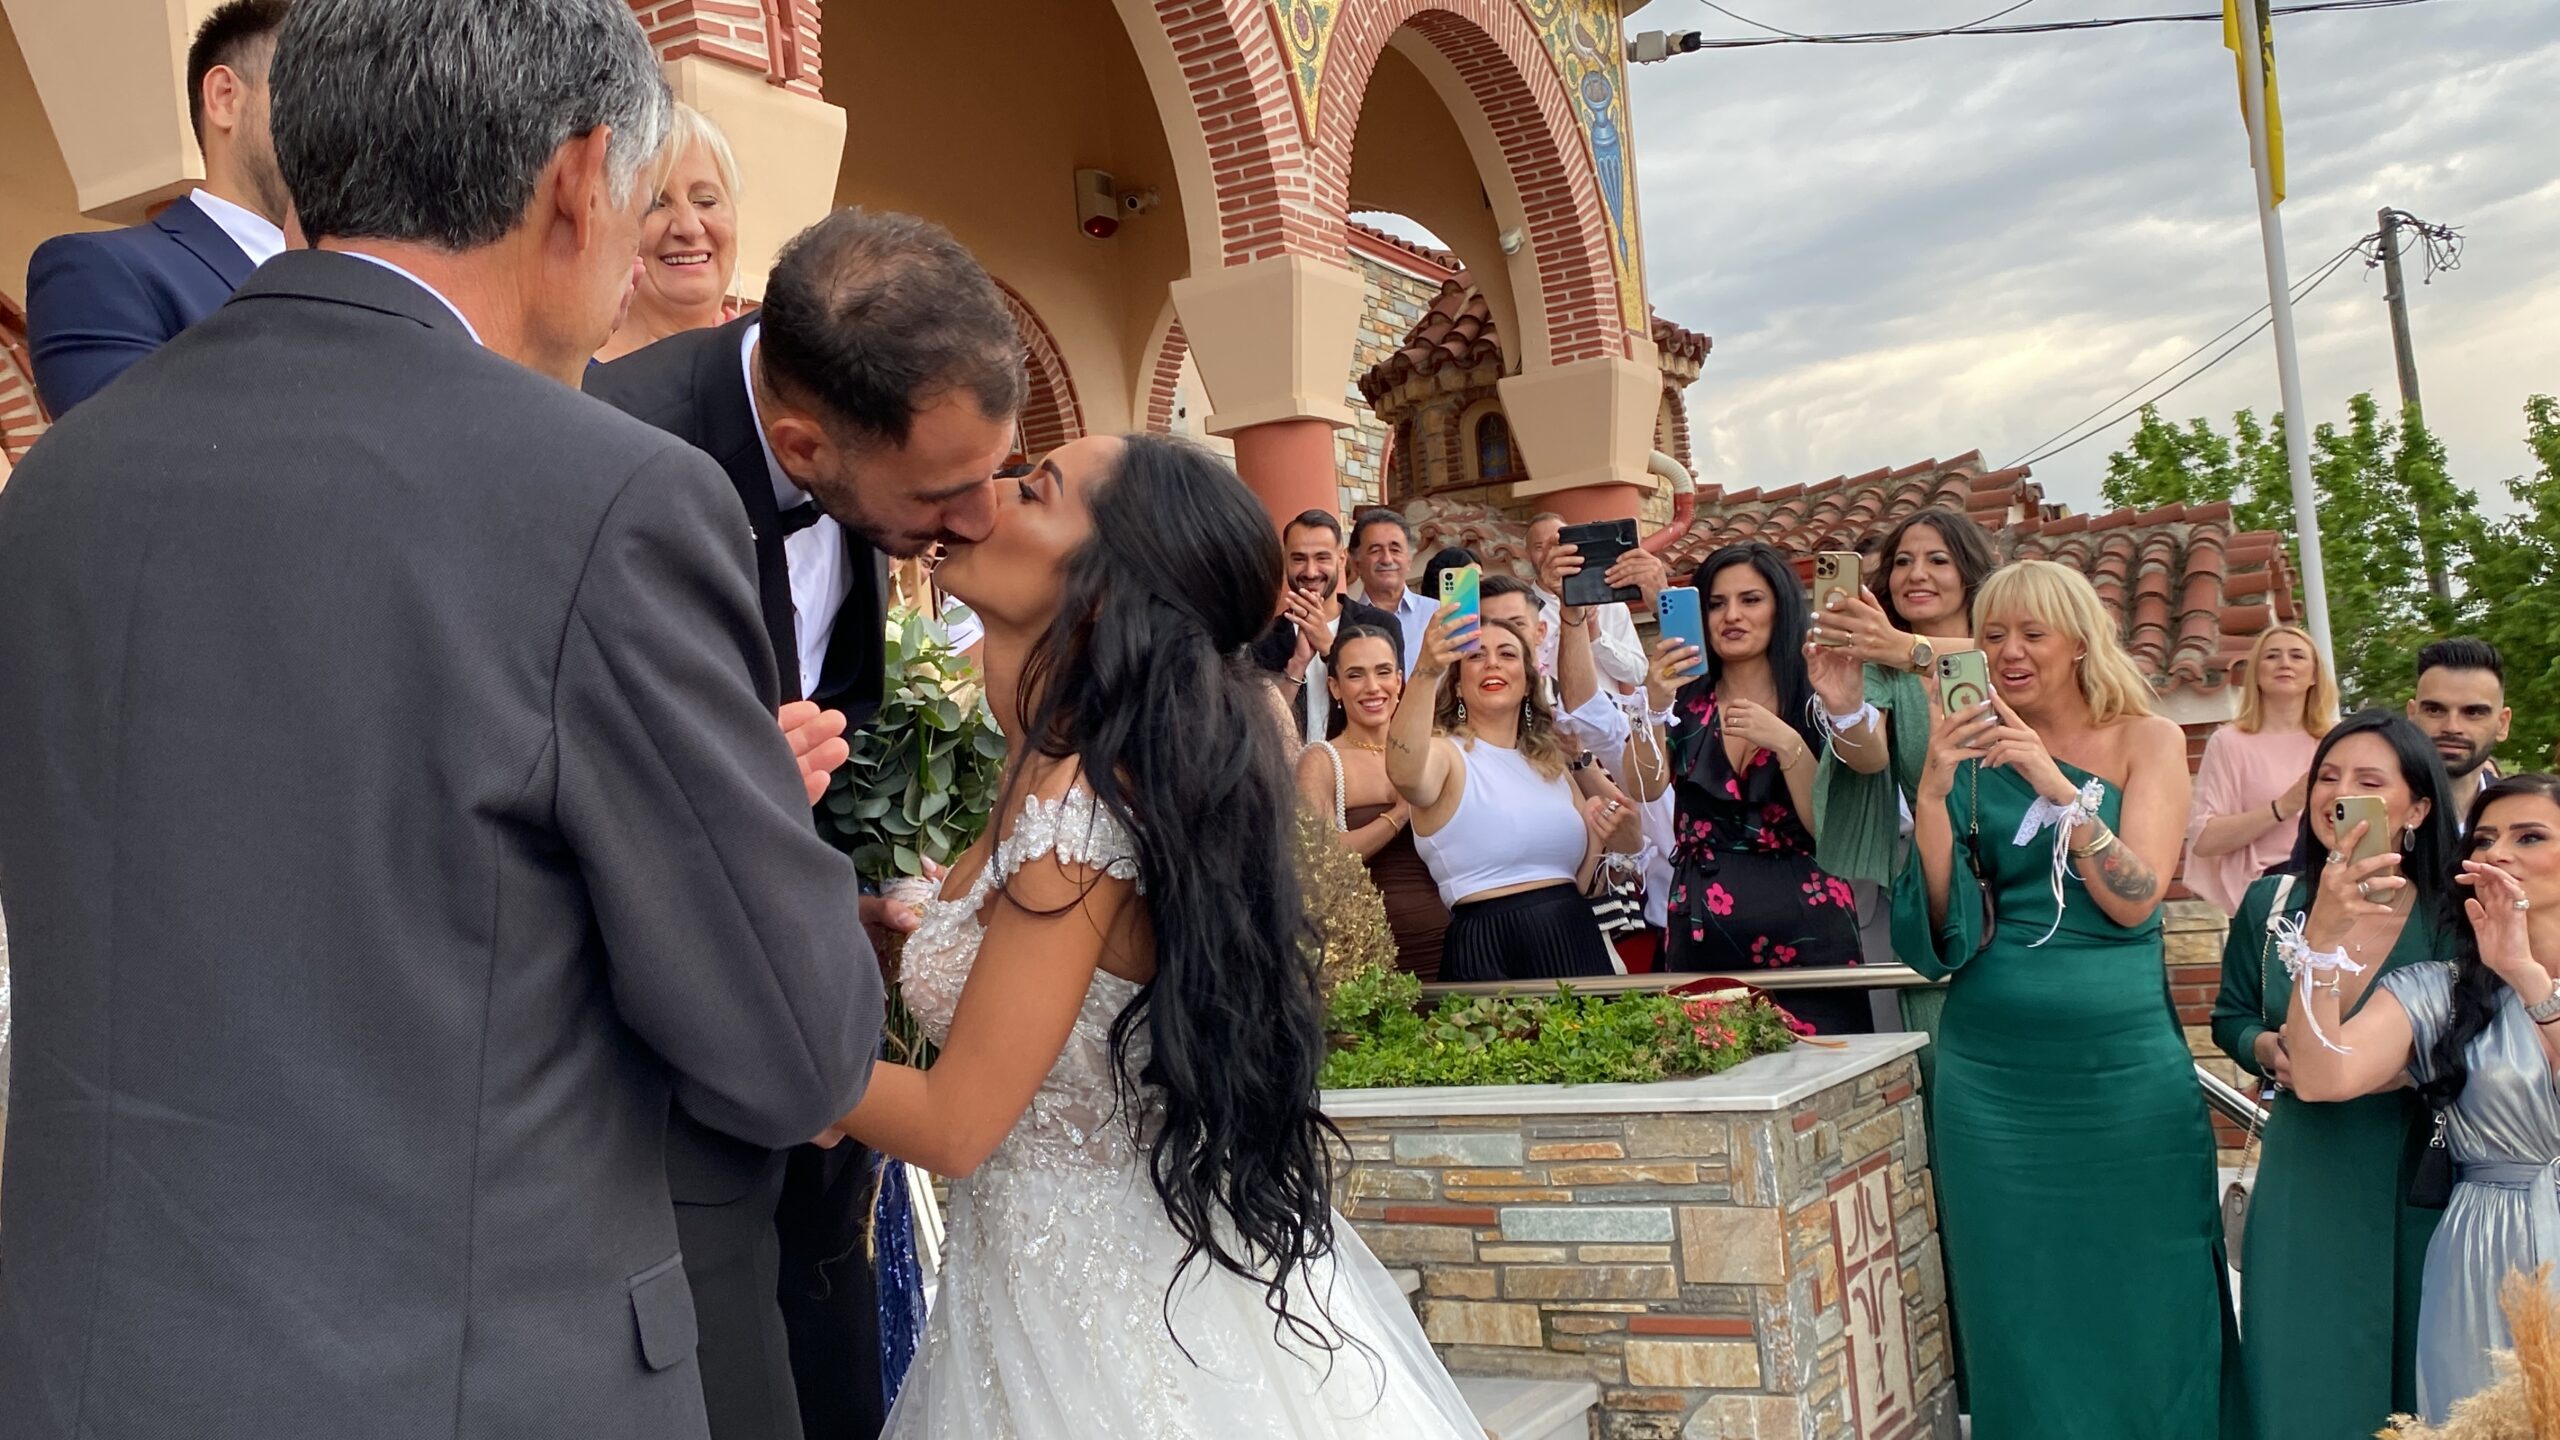 Παντρεύτηκε ο ποδοσφαιριστής του Ηρακλή Λάρισας Μιχάλης Γιαννίτσης -Η υπέροχη νύφη Δώρα Ντούρου με το εξαιρετικό νυφικό - Φωτογραφίες - Βίντεο!!